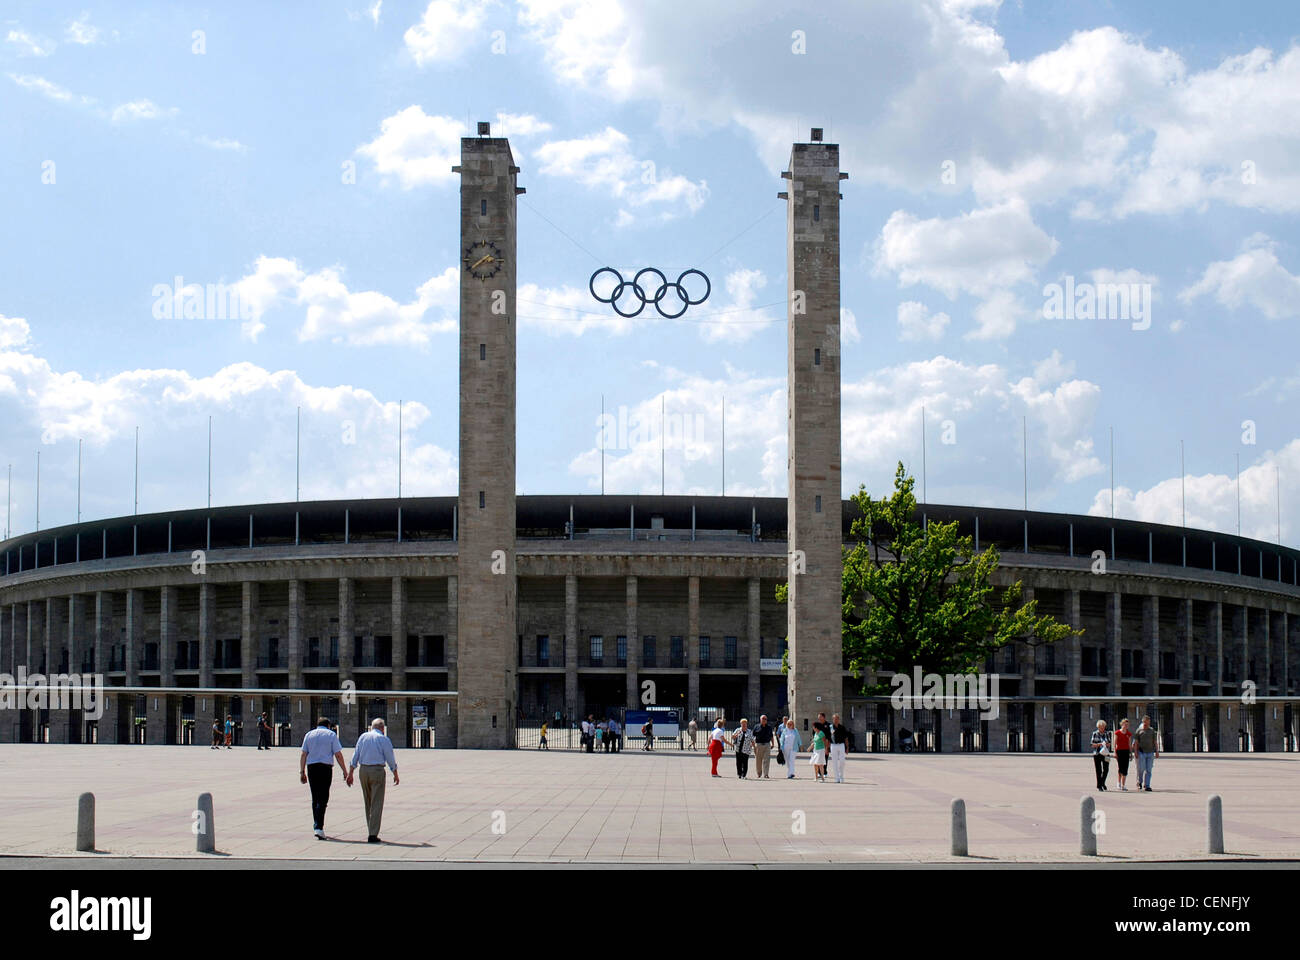 Estadio Olímpico de Berlín con los anillos olímpicos sobre la entrada principal. Foto de stock